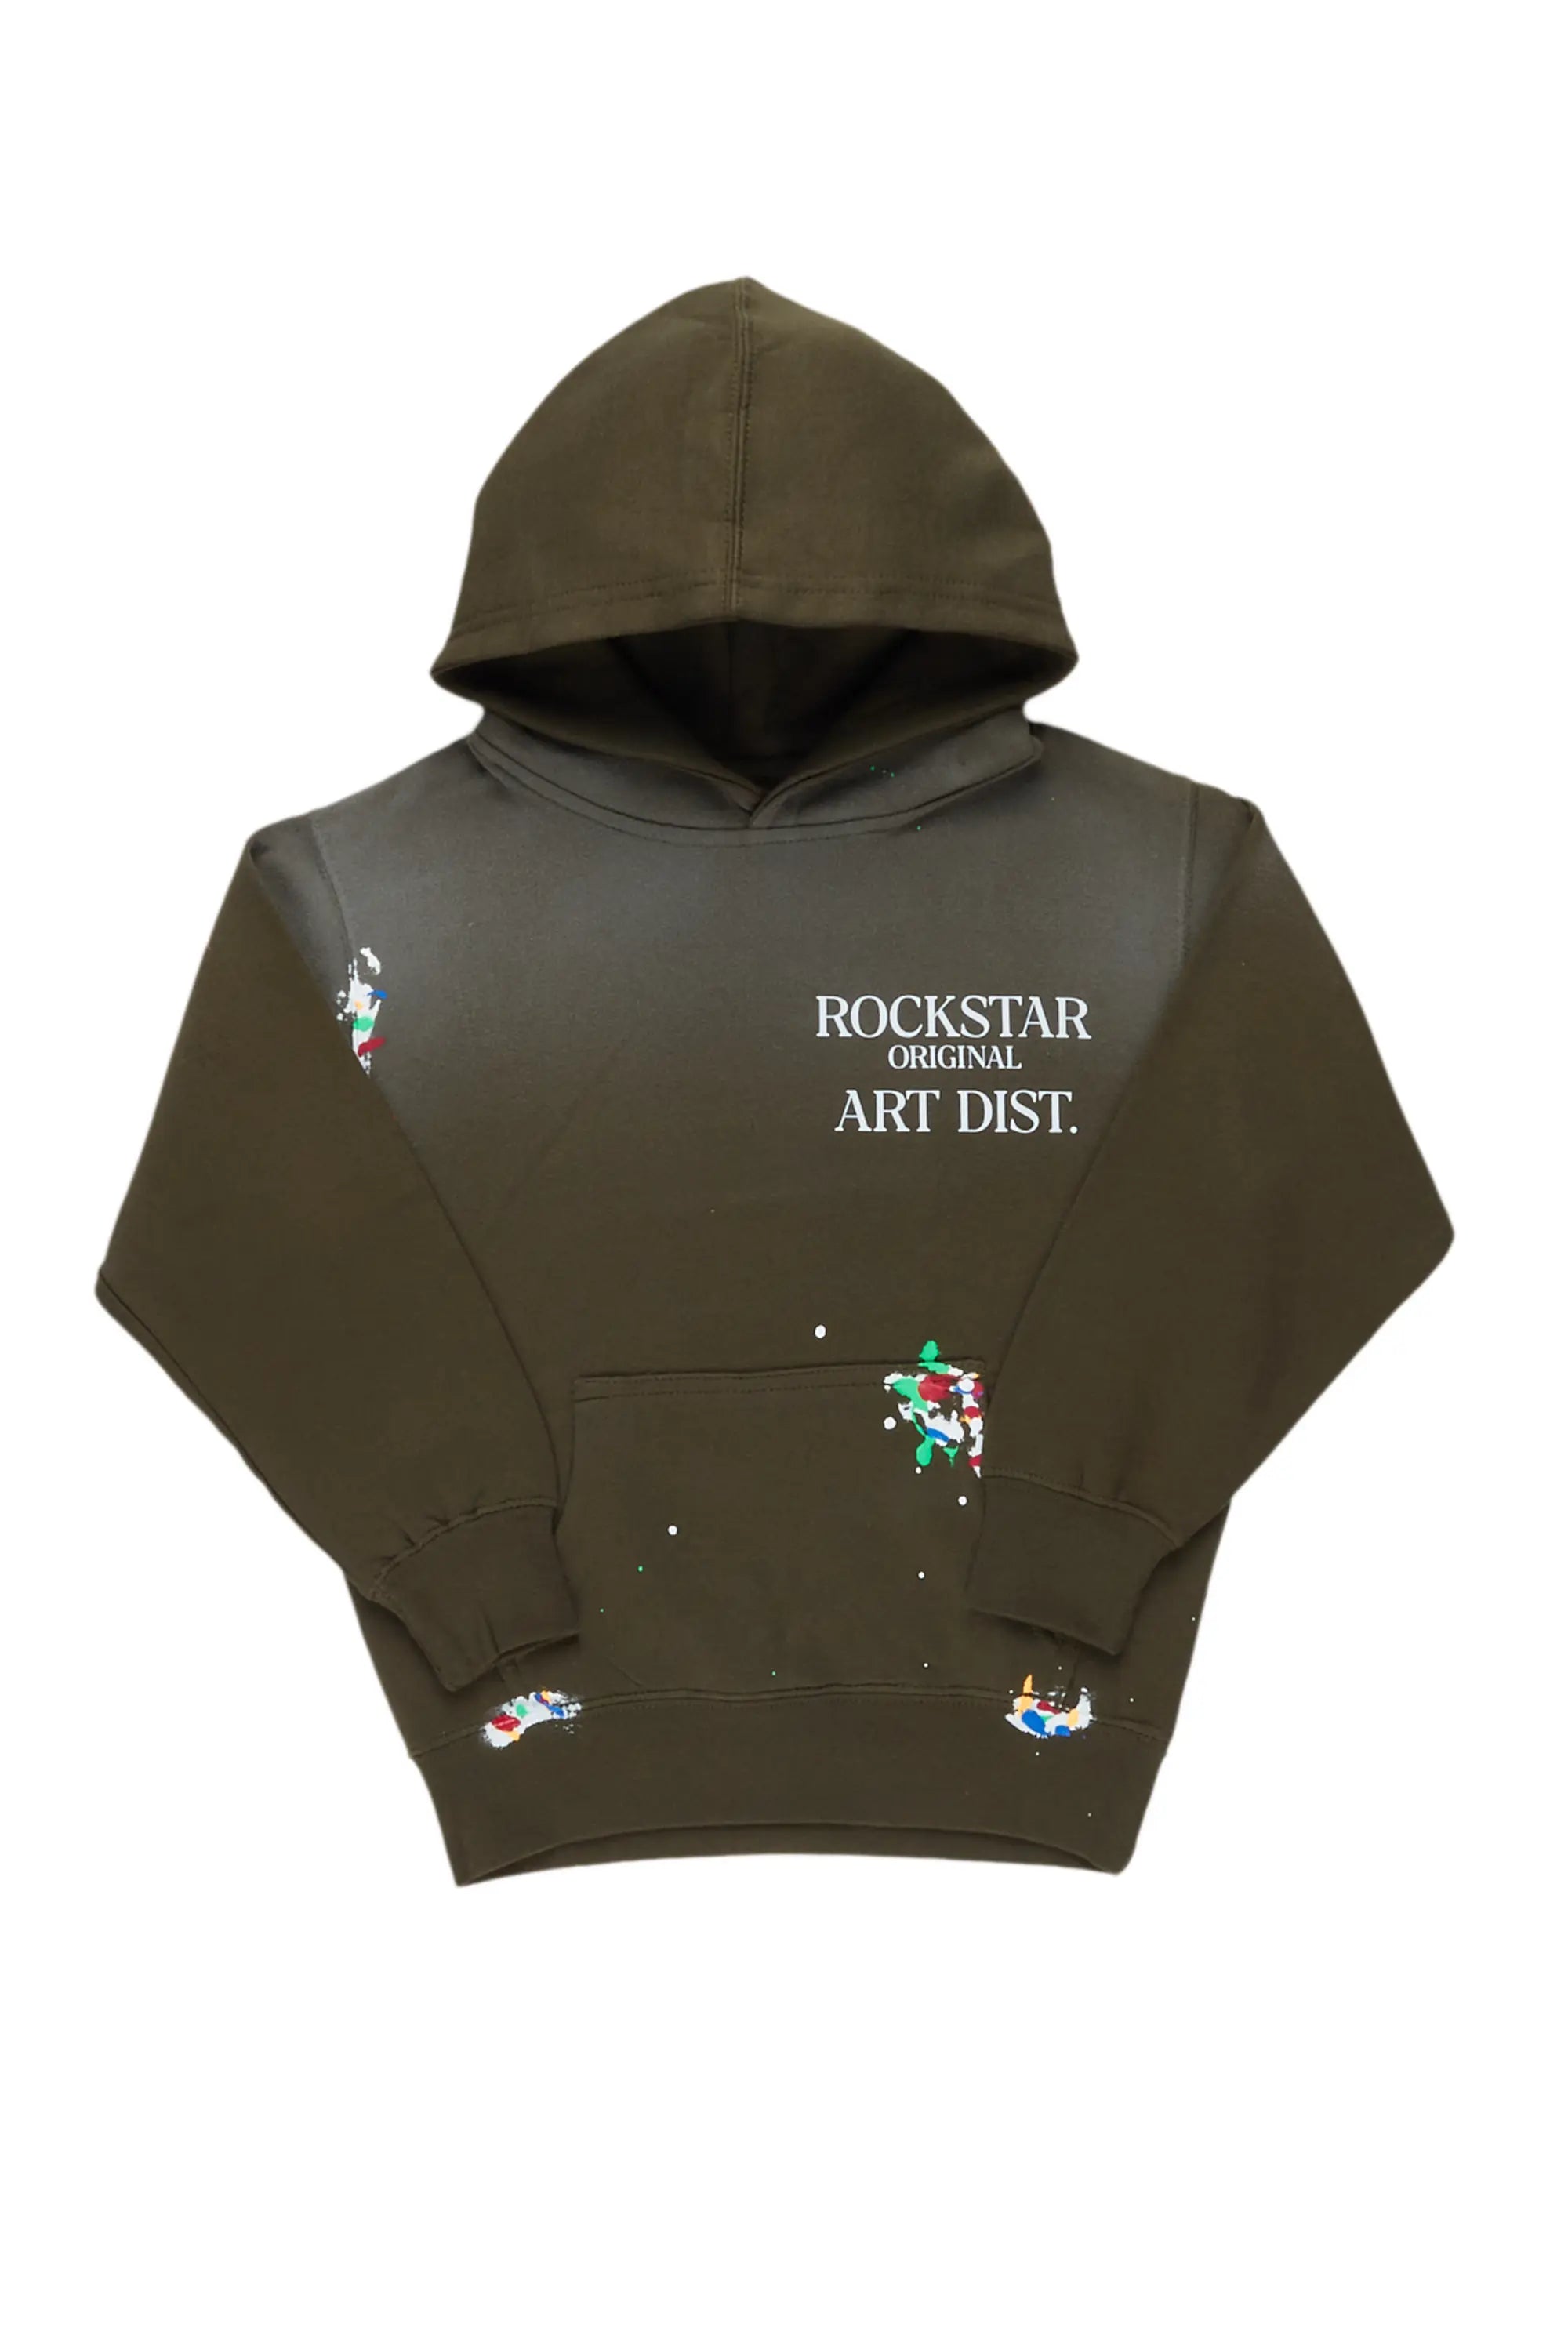 Boys Rockstar Art Dist. Dark Green Graphic Hoodie